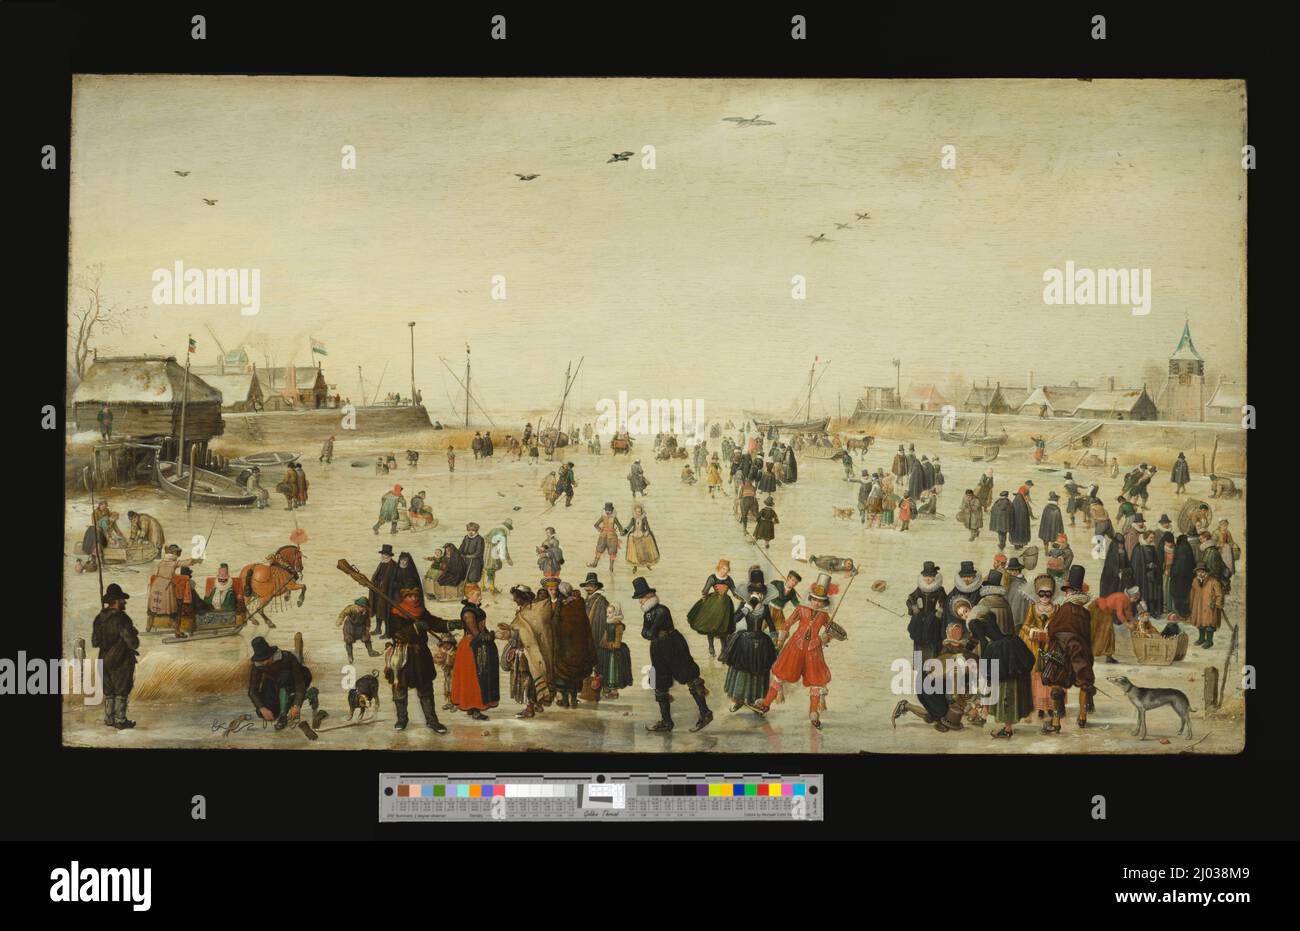 Scène d'hiver sur un canal gelé. Hendrick Avercamp (pays-Bas, Amsterdam, 1585/86-1634). Vers 1620. Peintures. Huile sur bois Banque D'Images